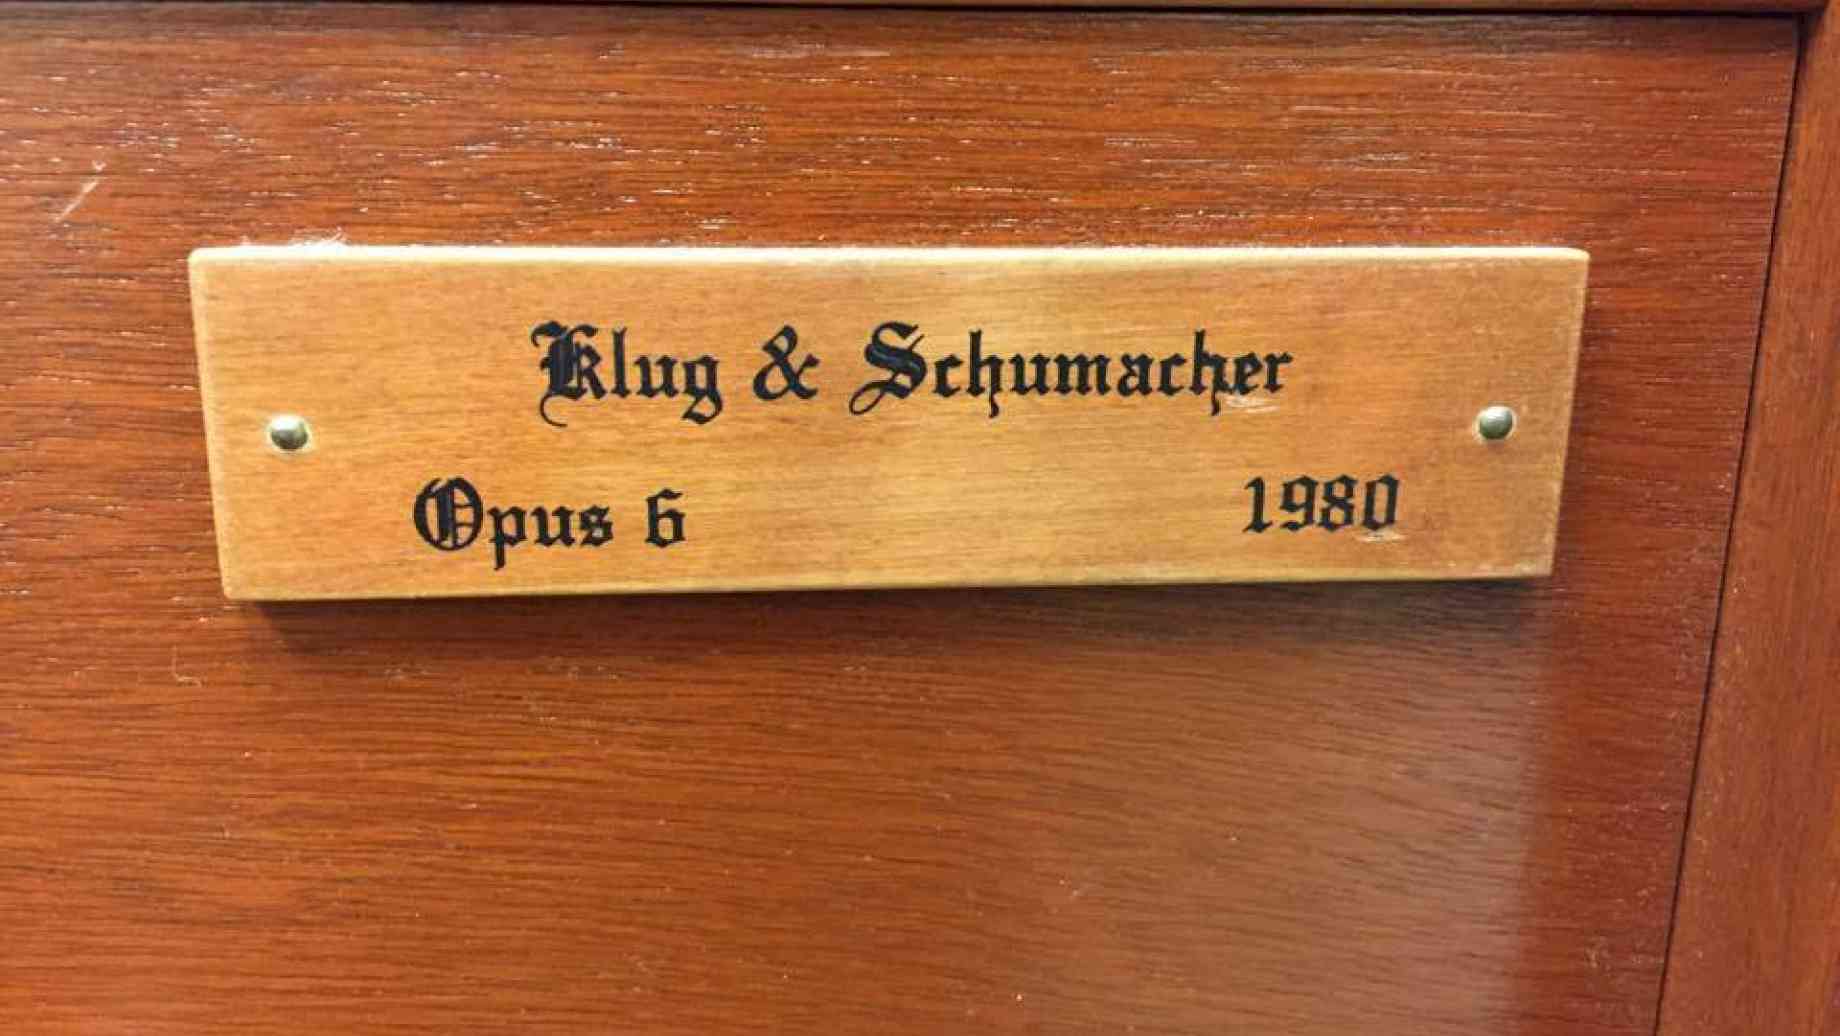 Klug & Schumacher, 1980